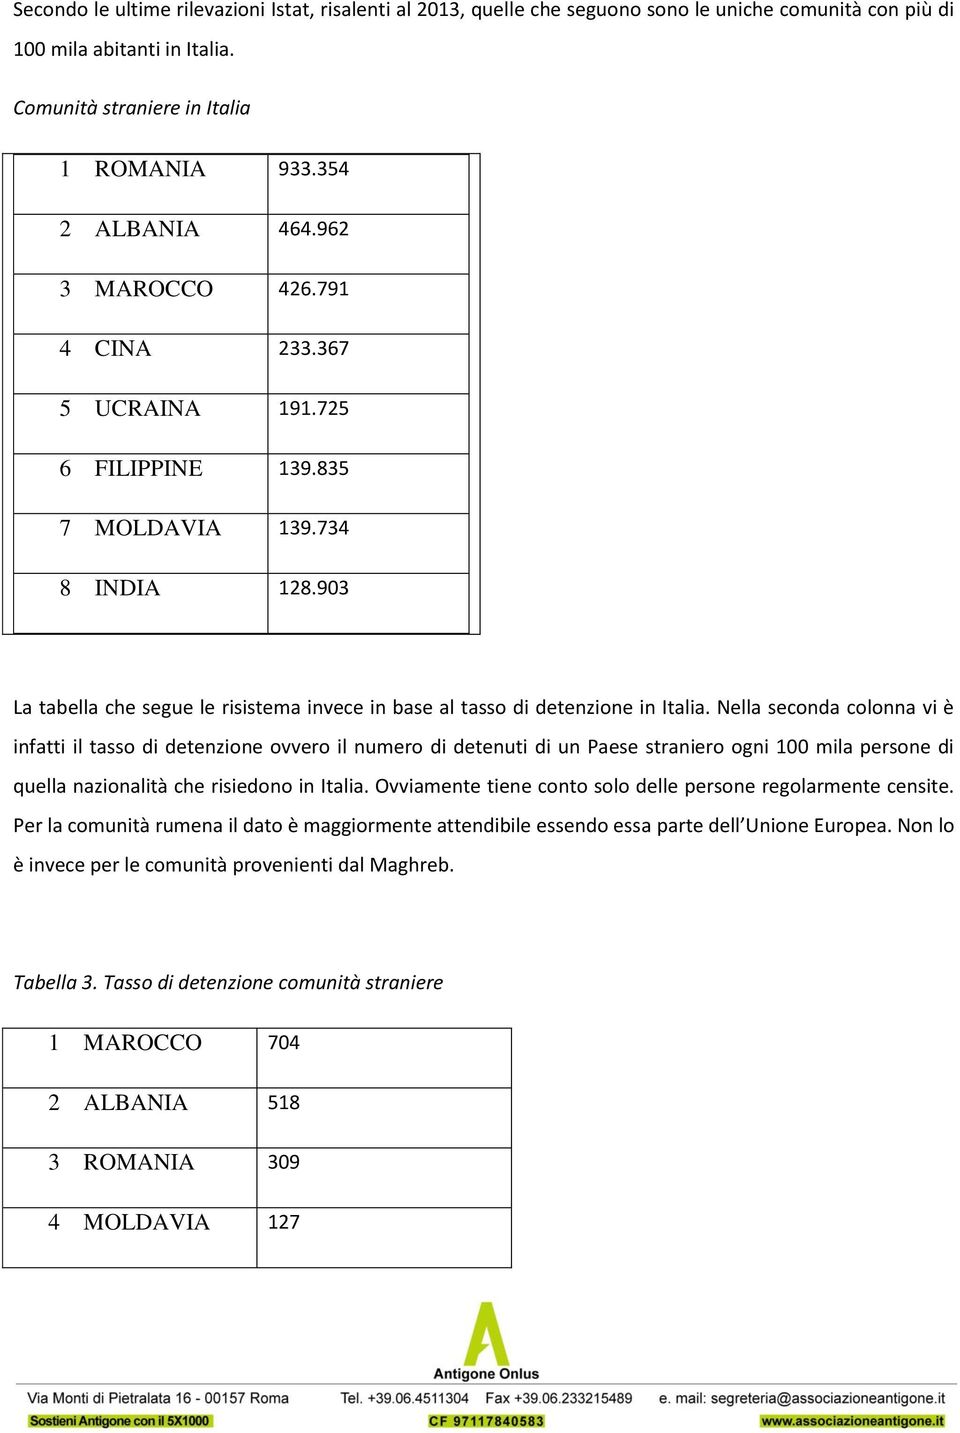 Nella seconda colonna vi è infatti il tasso di detenzione ovvero il numero di detenuti di un Paese straniero ogni 100 mila persone di quella nazionalità che risiedono in Italia.